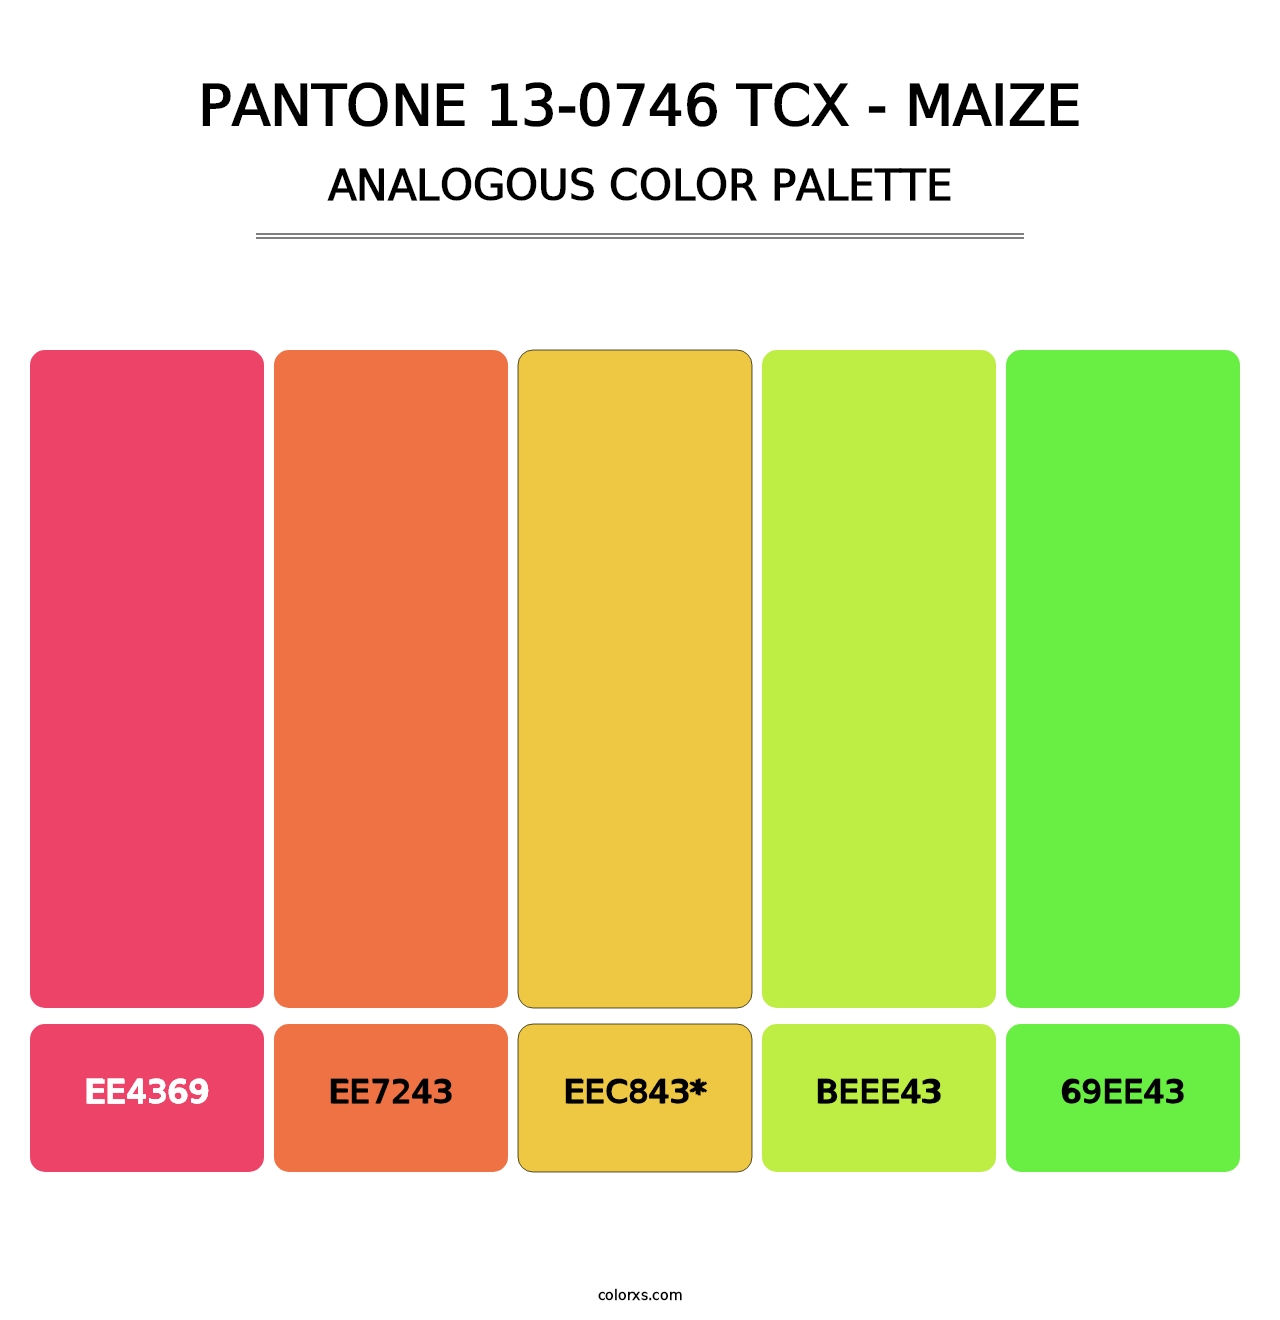 PANTONE 13-0746 TCX - Maize - Analogous Color Palette